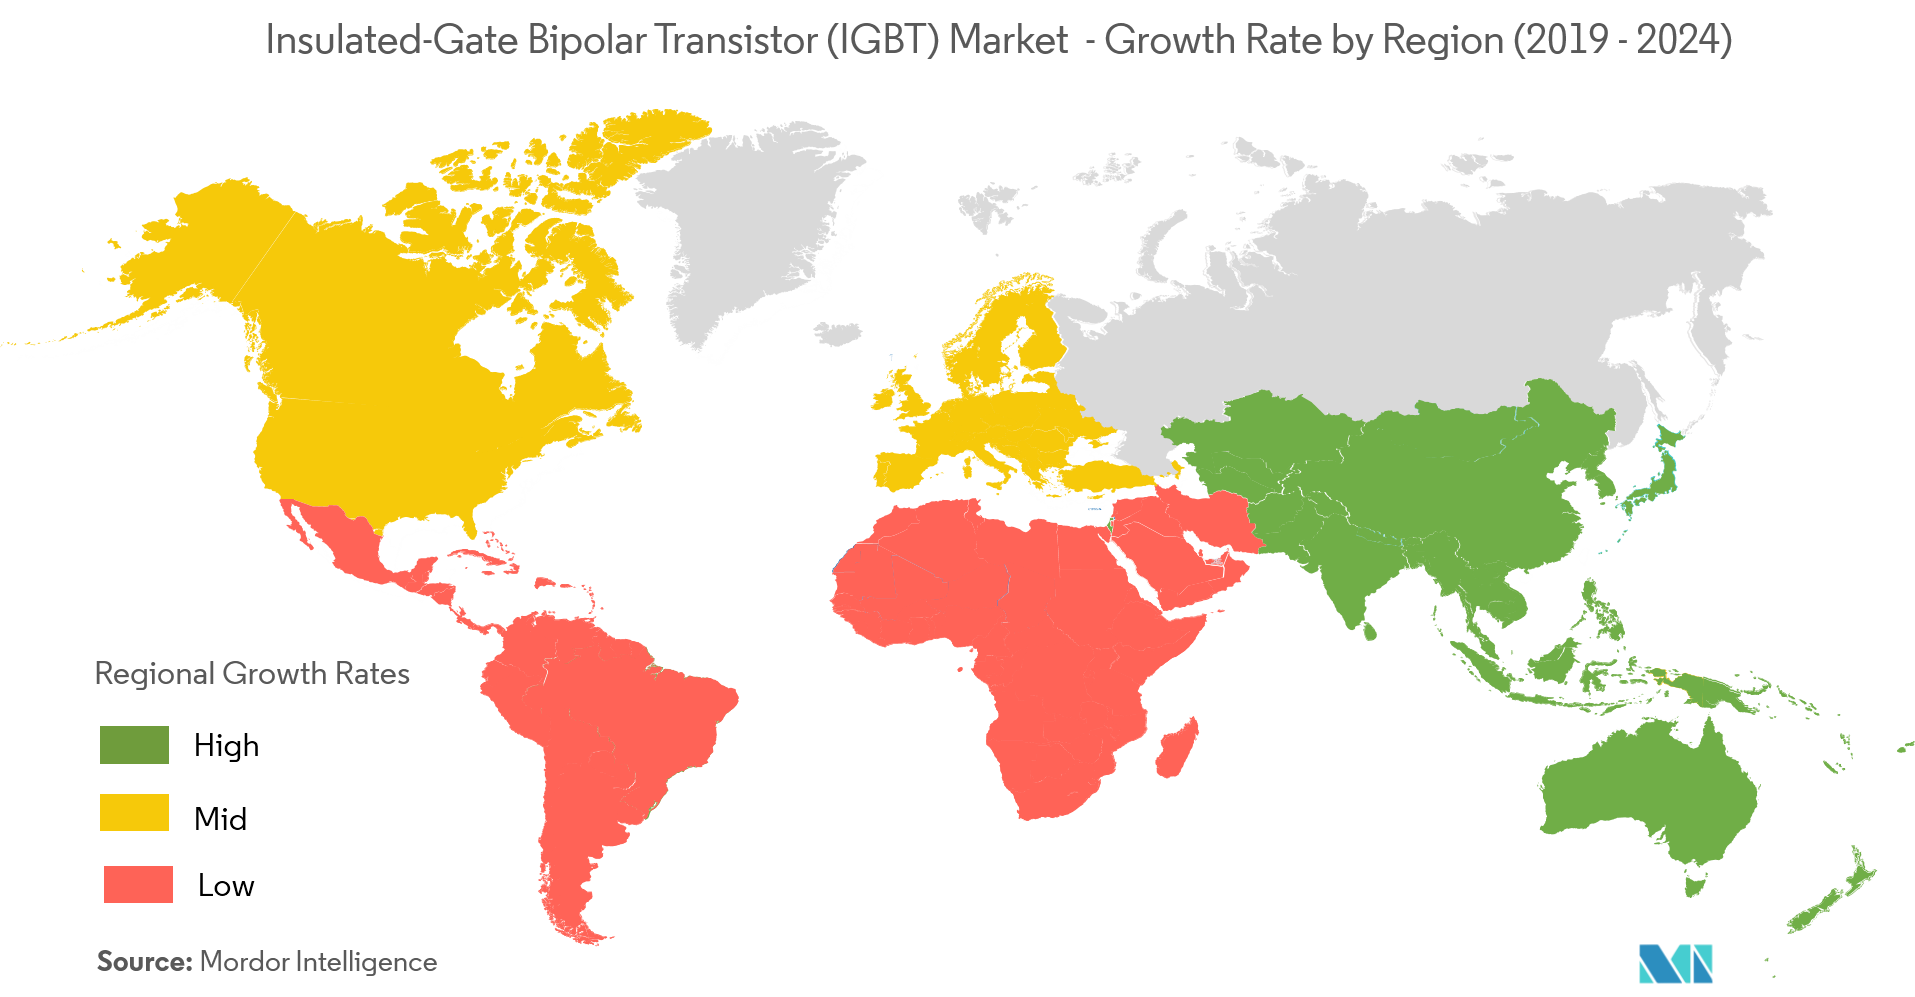 سوق الترانزستورات ثنائية القطب ذات البوابة المعزولة - معدل النمو حسب المنطقة (2022-2027)